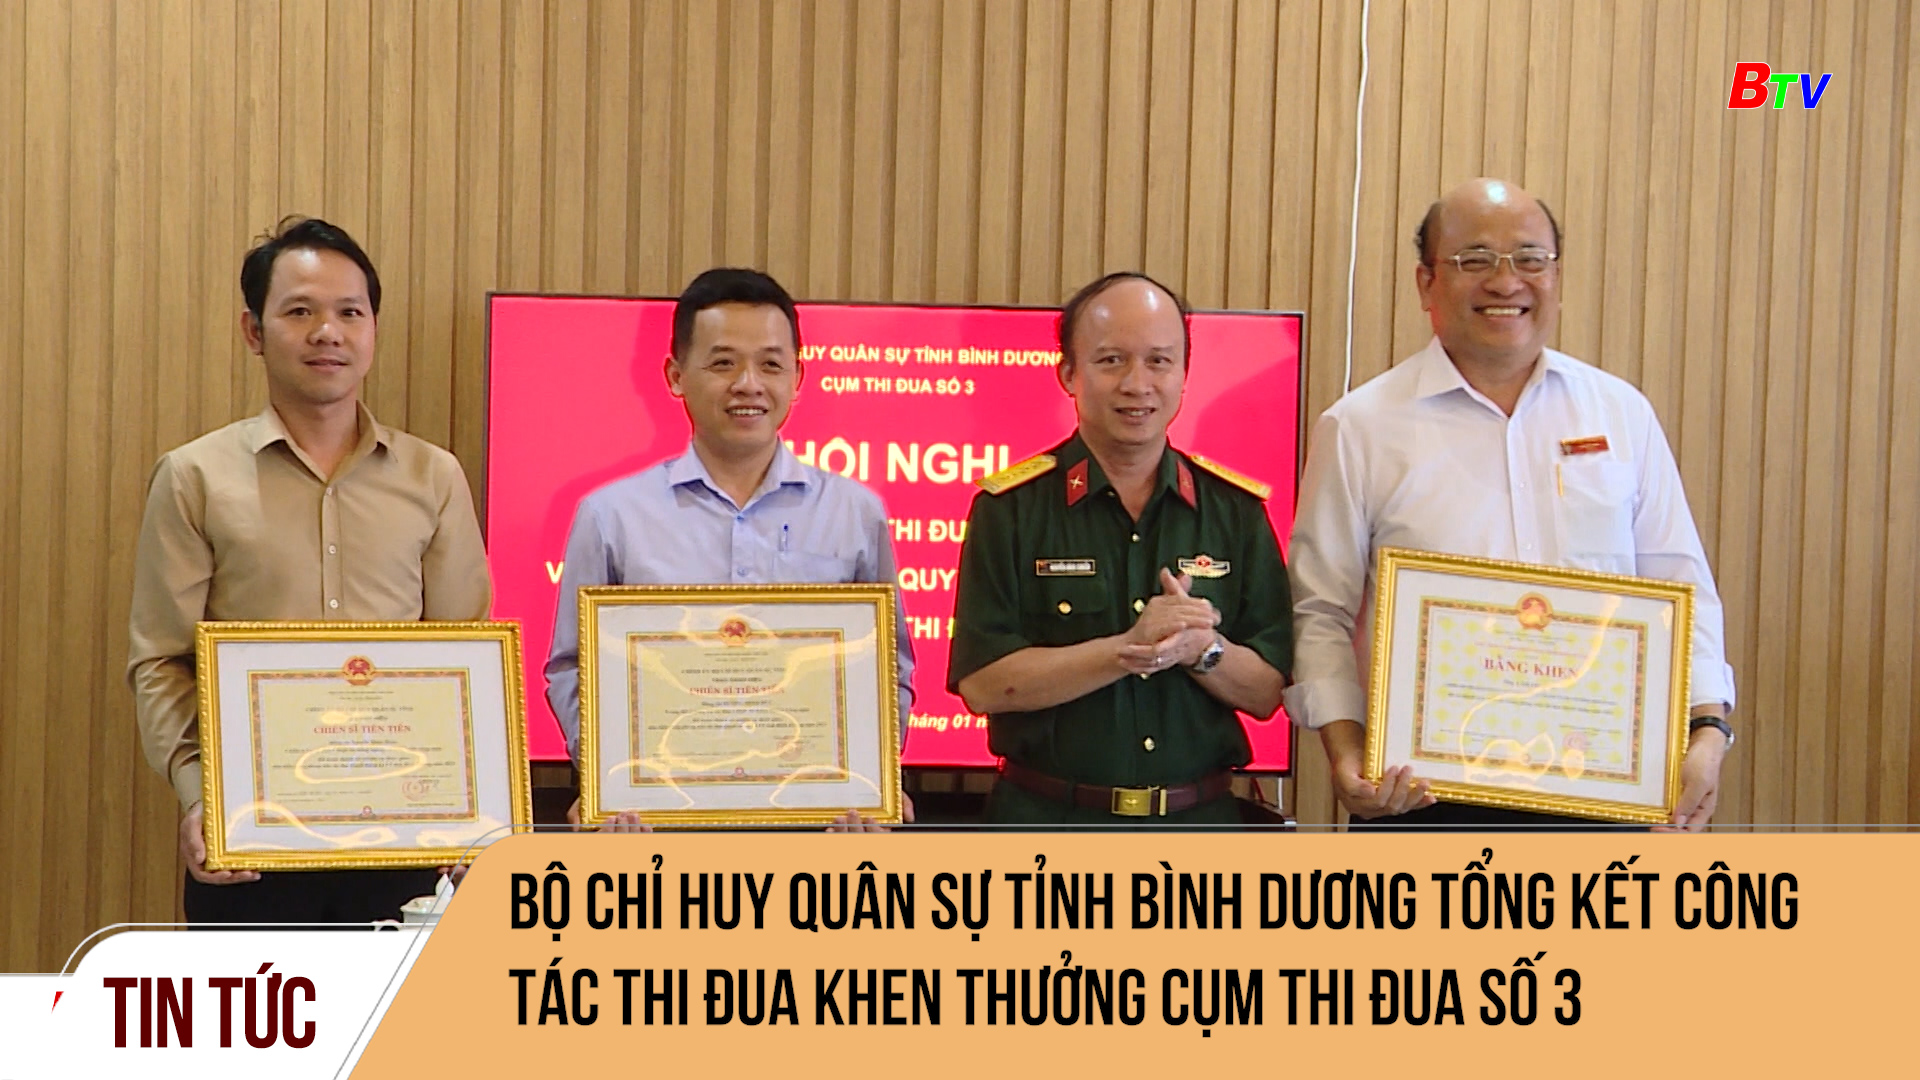 Bộ Chỉ huy quân sự tỉnh Bình Dương tổng kết công tác thi đua khen thưởng Cụm thi đua số 3